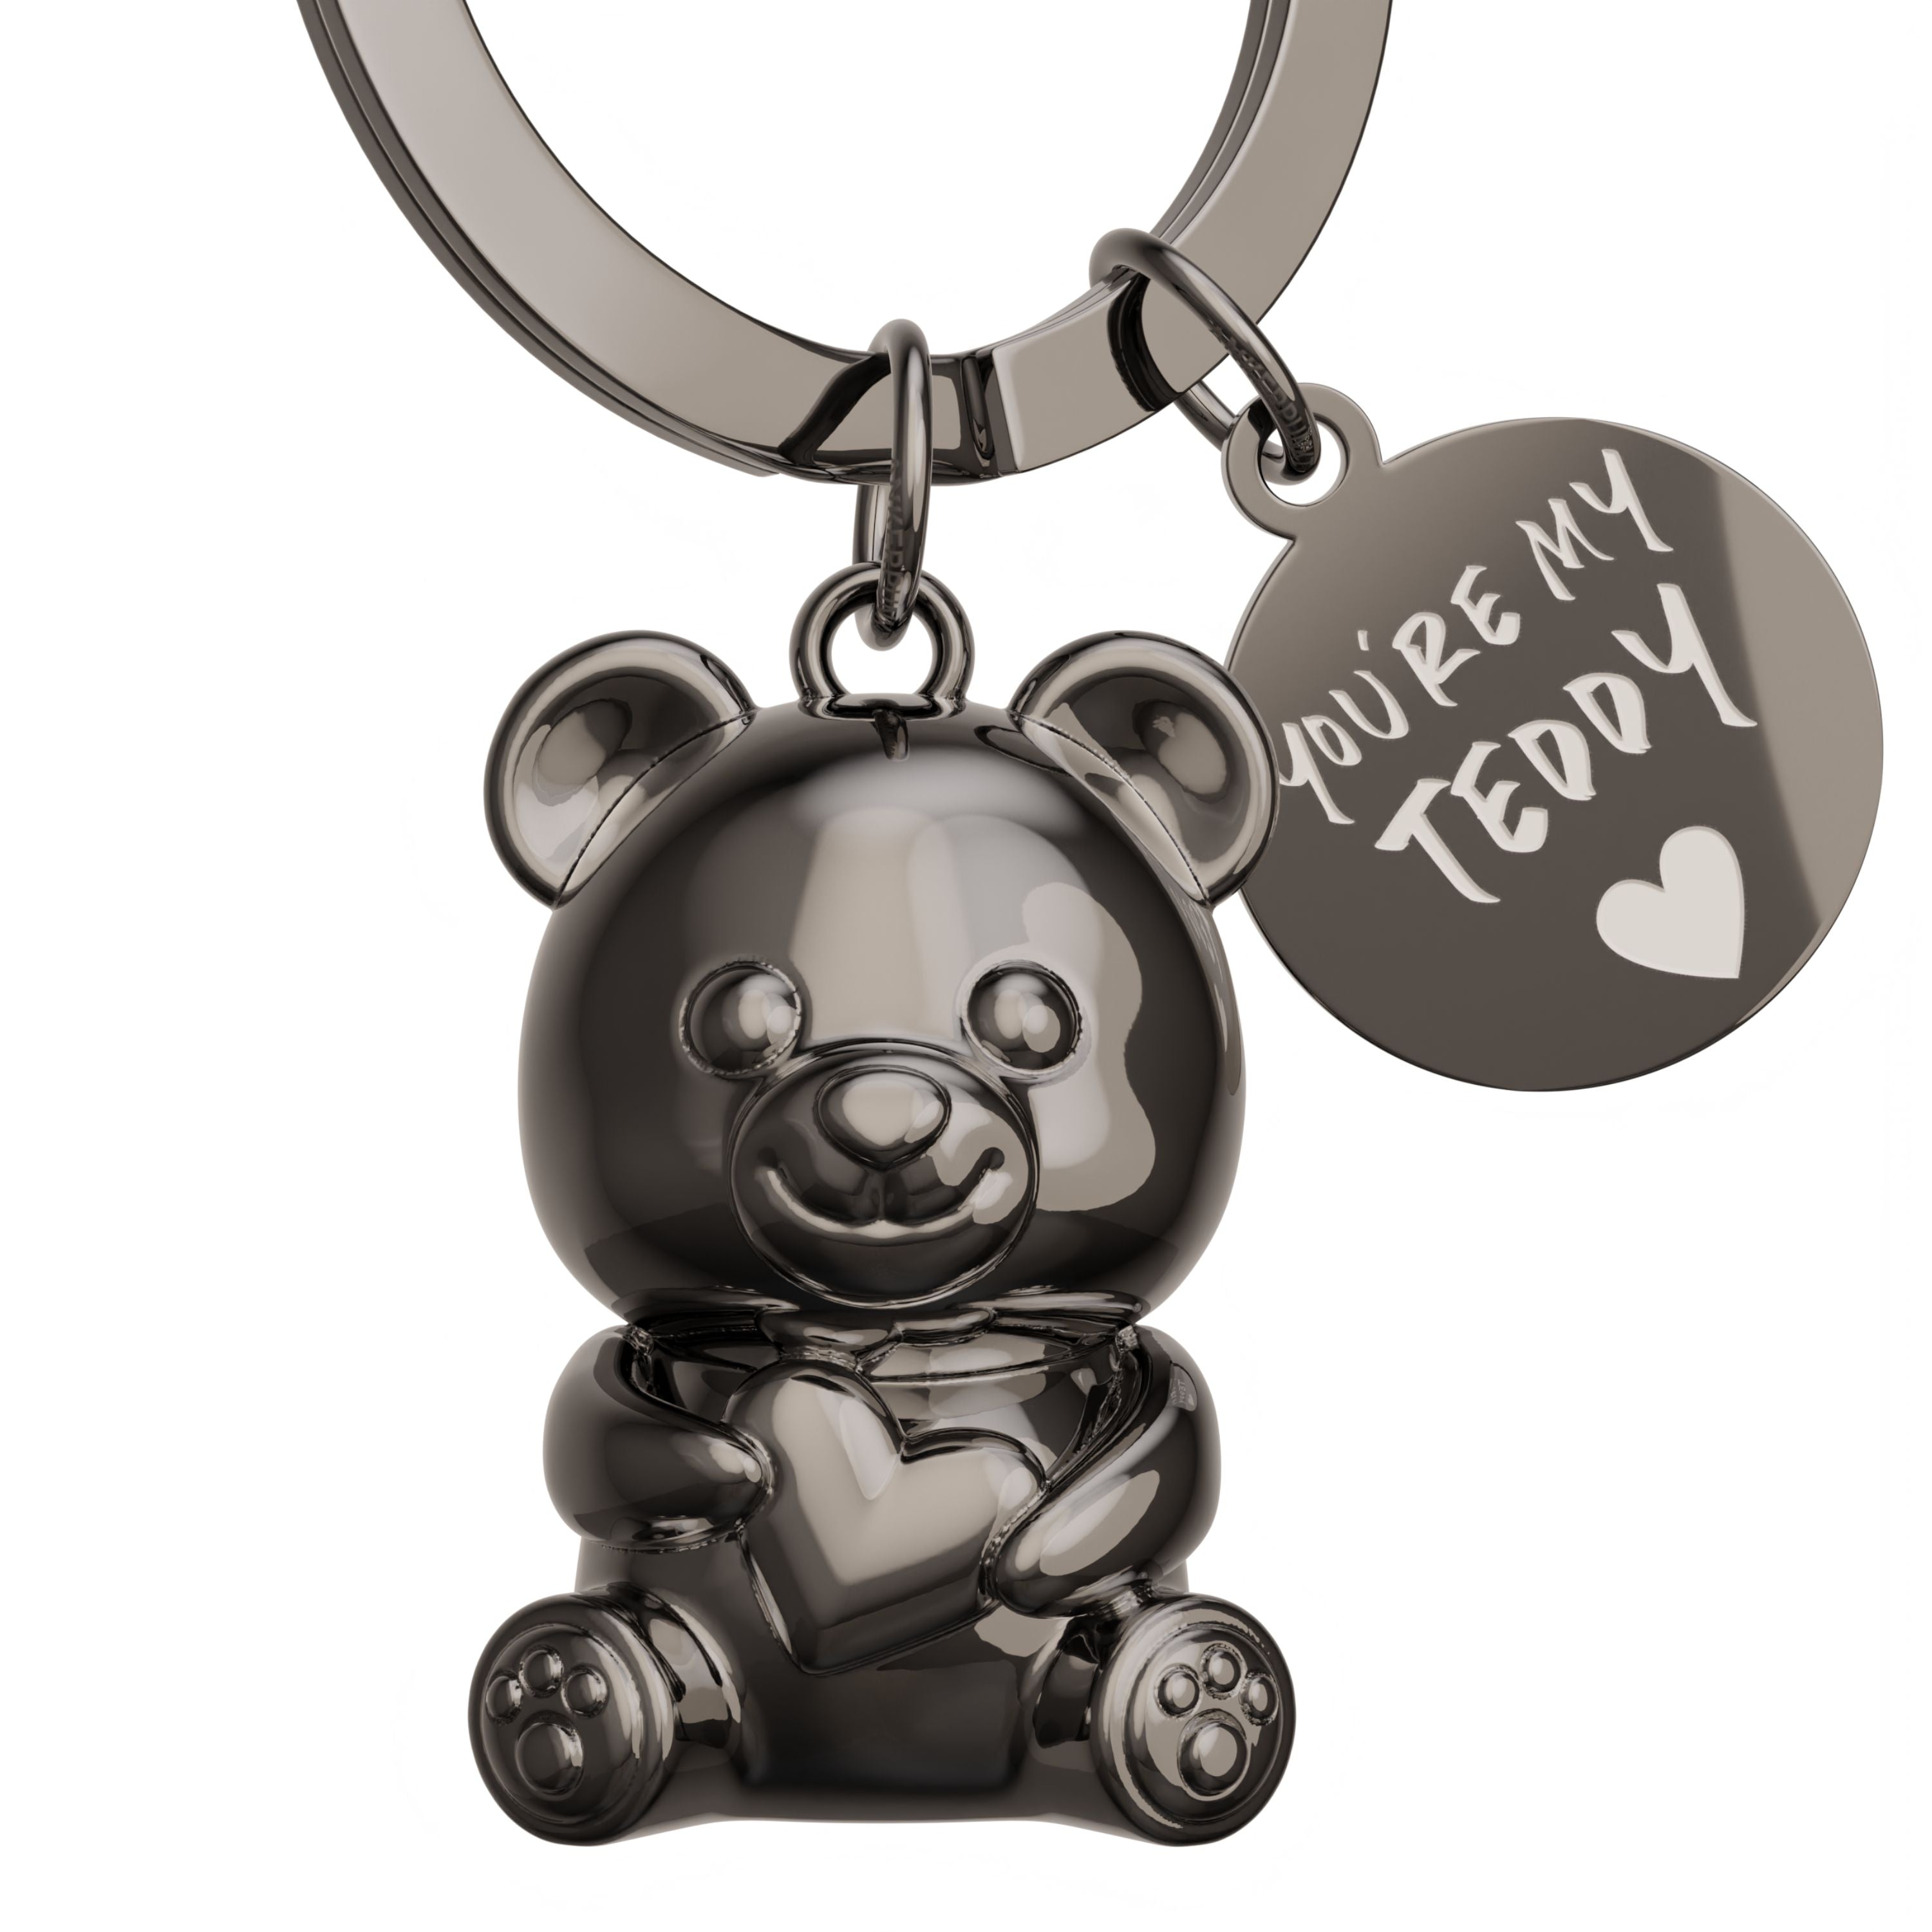 Teddybär Schlüsselanhänger in schwarz glänzend mit Anhängerplättchen mit Gravur "You're my Teddy"